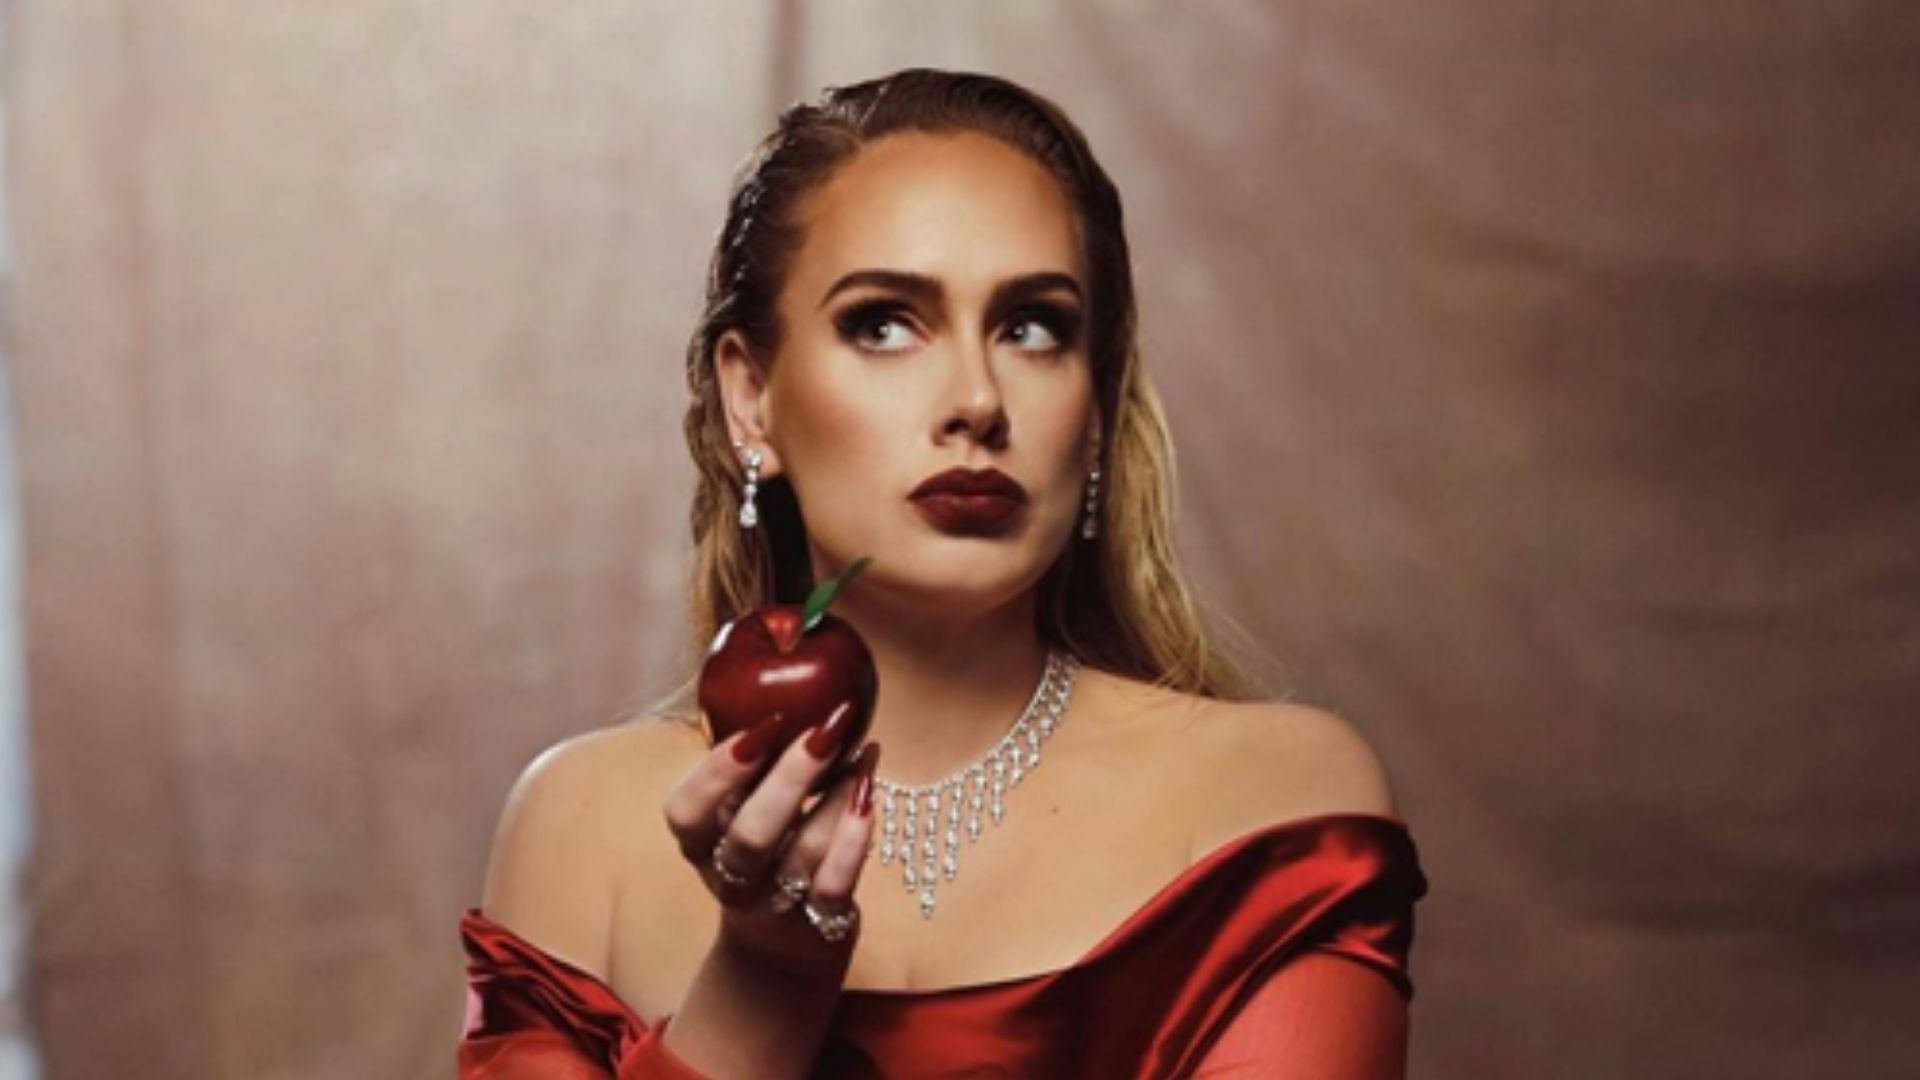 Confira o clipe de ‘Oh My God’ novo single de Adele